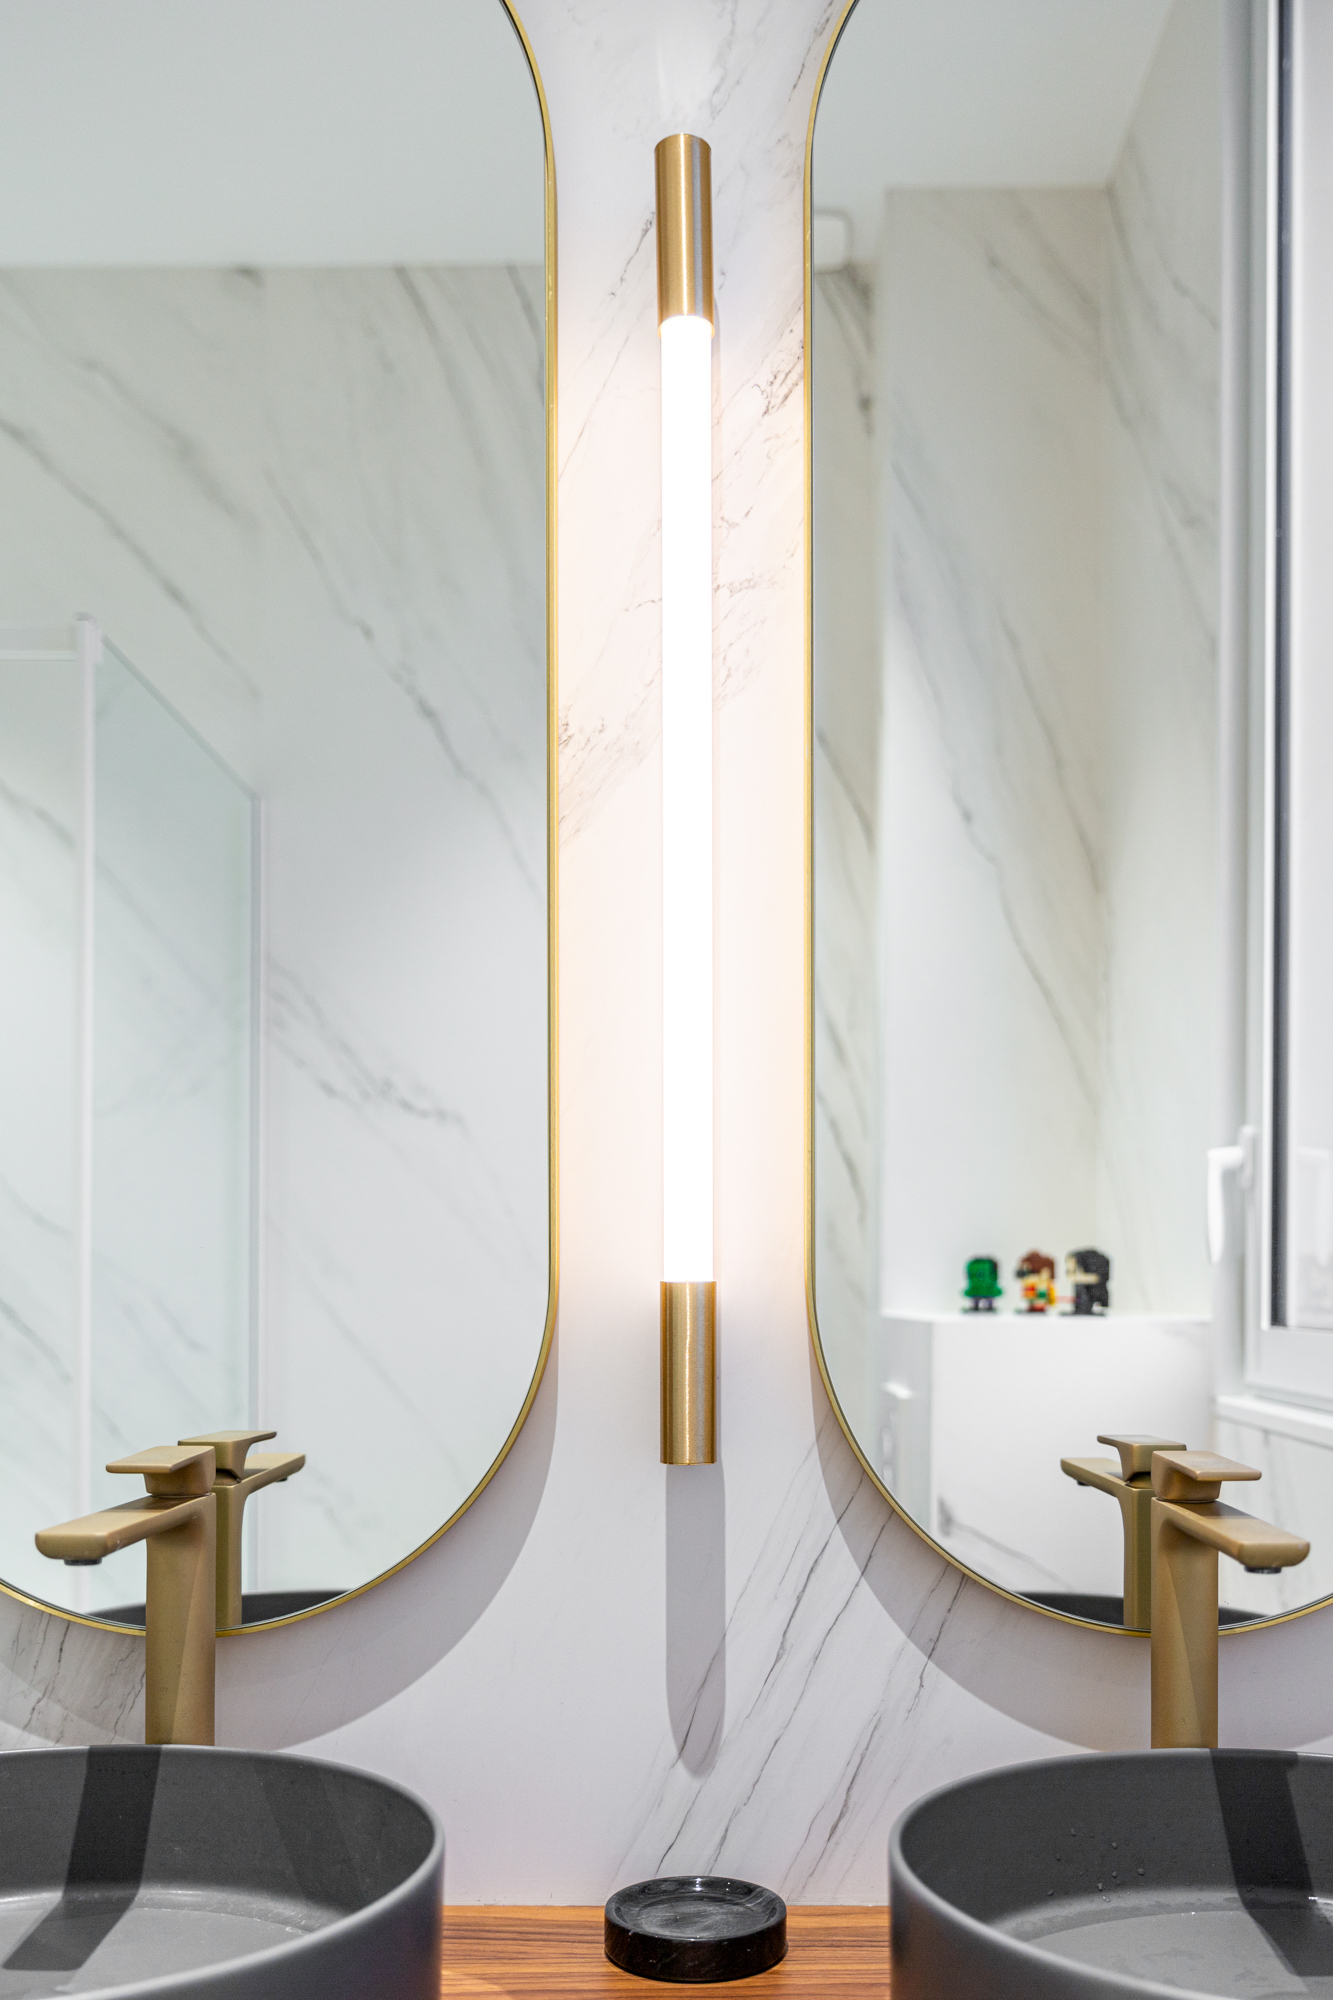 Eclairage de type tube dans une salle de bain avec deux miroirs. On aperçoit deux vasques